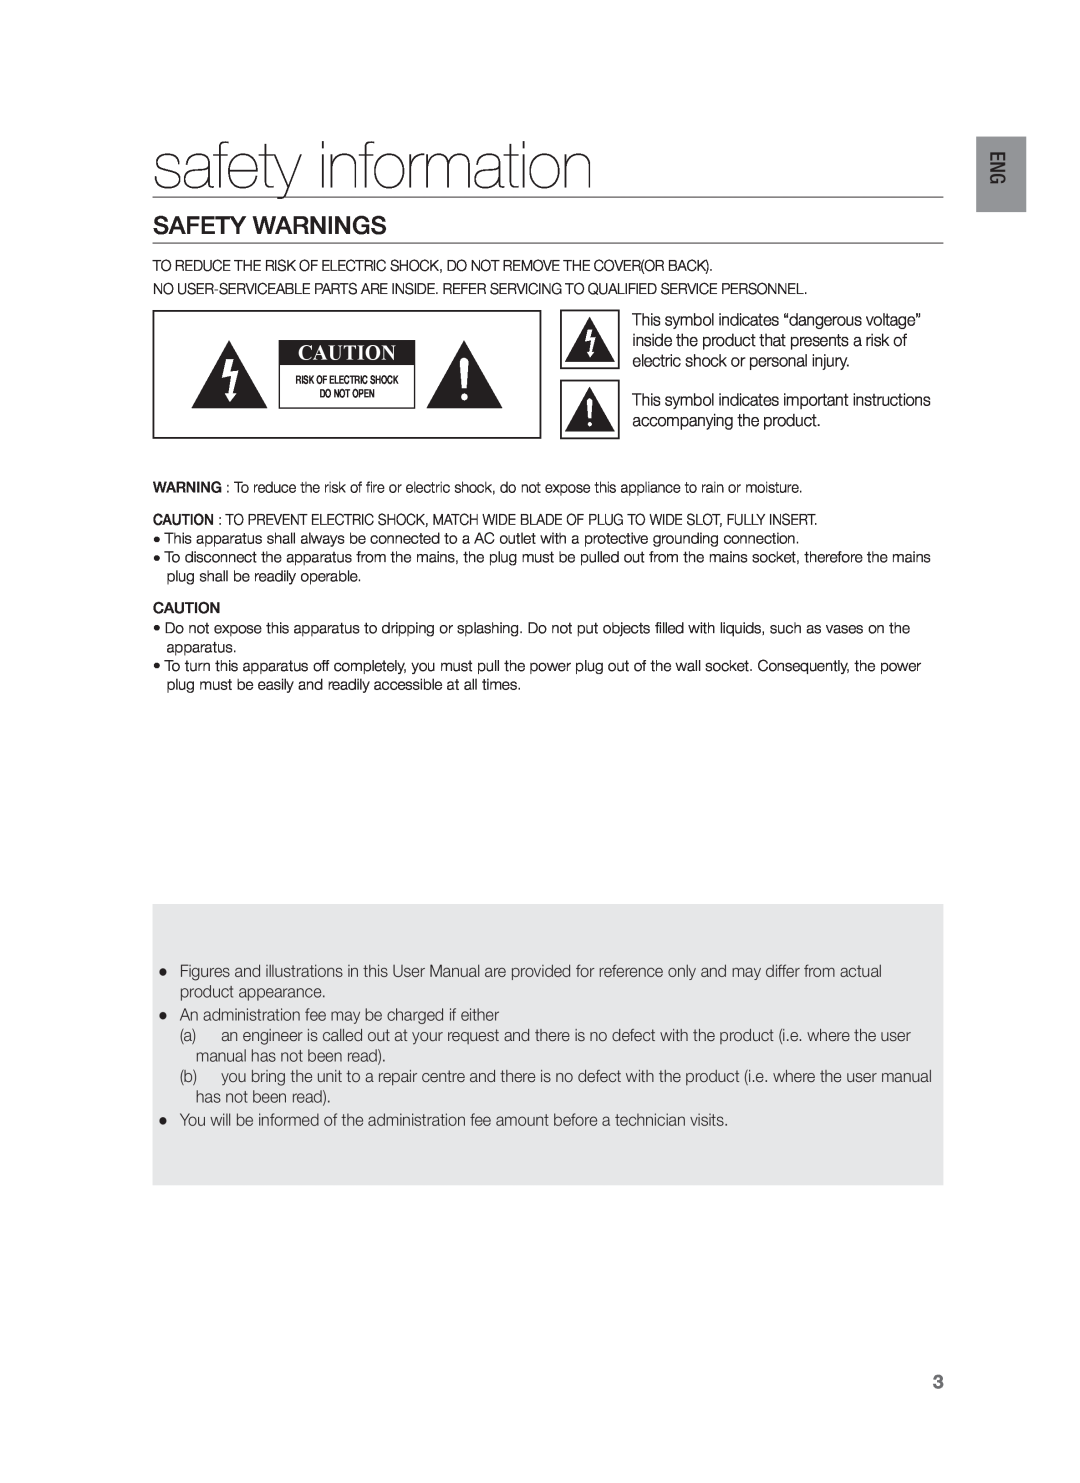 Samsung HW-H430/TK, HW-H430/EN, HW-H430/ZF manual safety information, Safety Warnings 